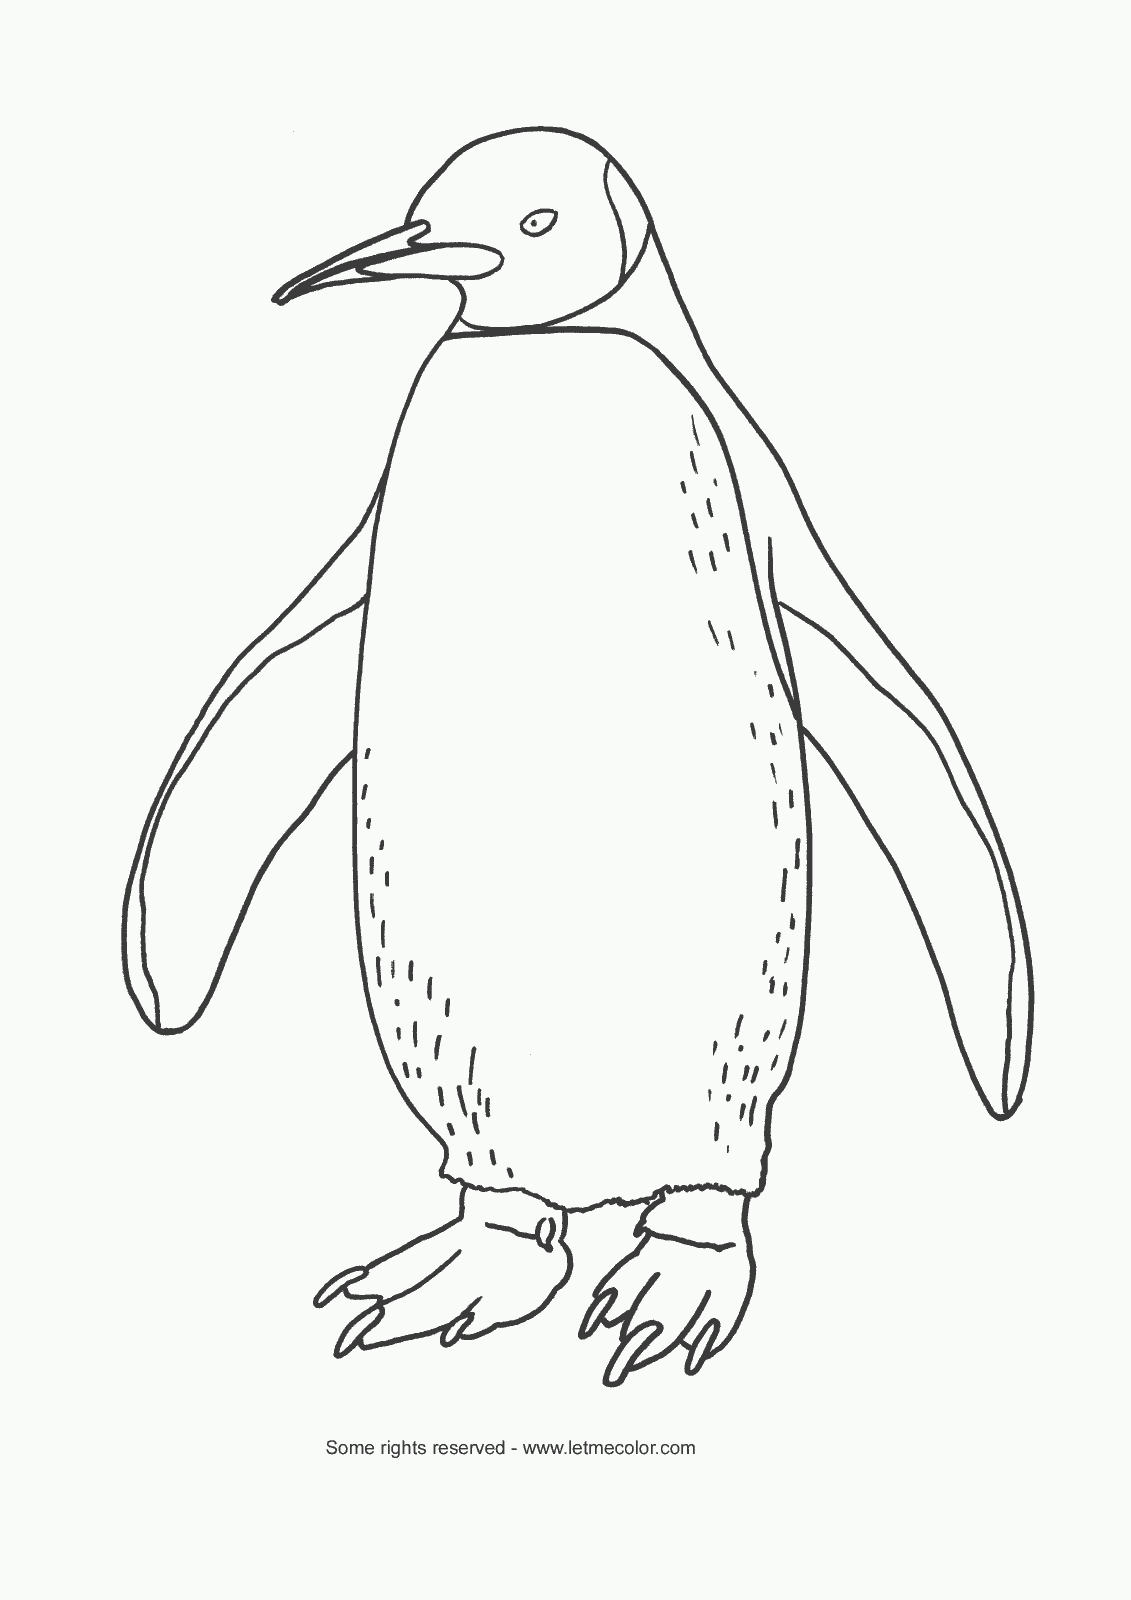 emperor penguin coloring page emperor penguin coloring pages coloring home page emperor coloring penguin 